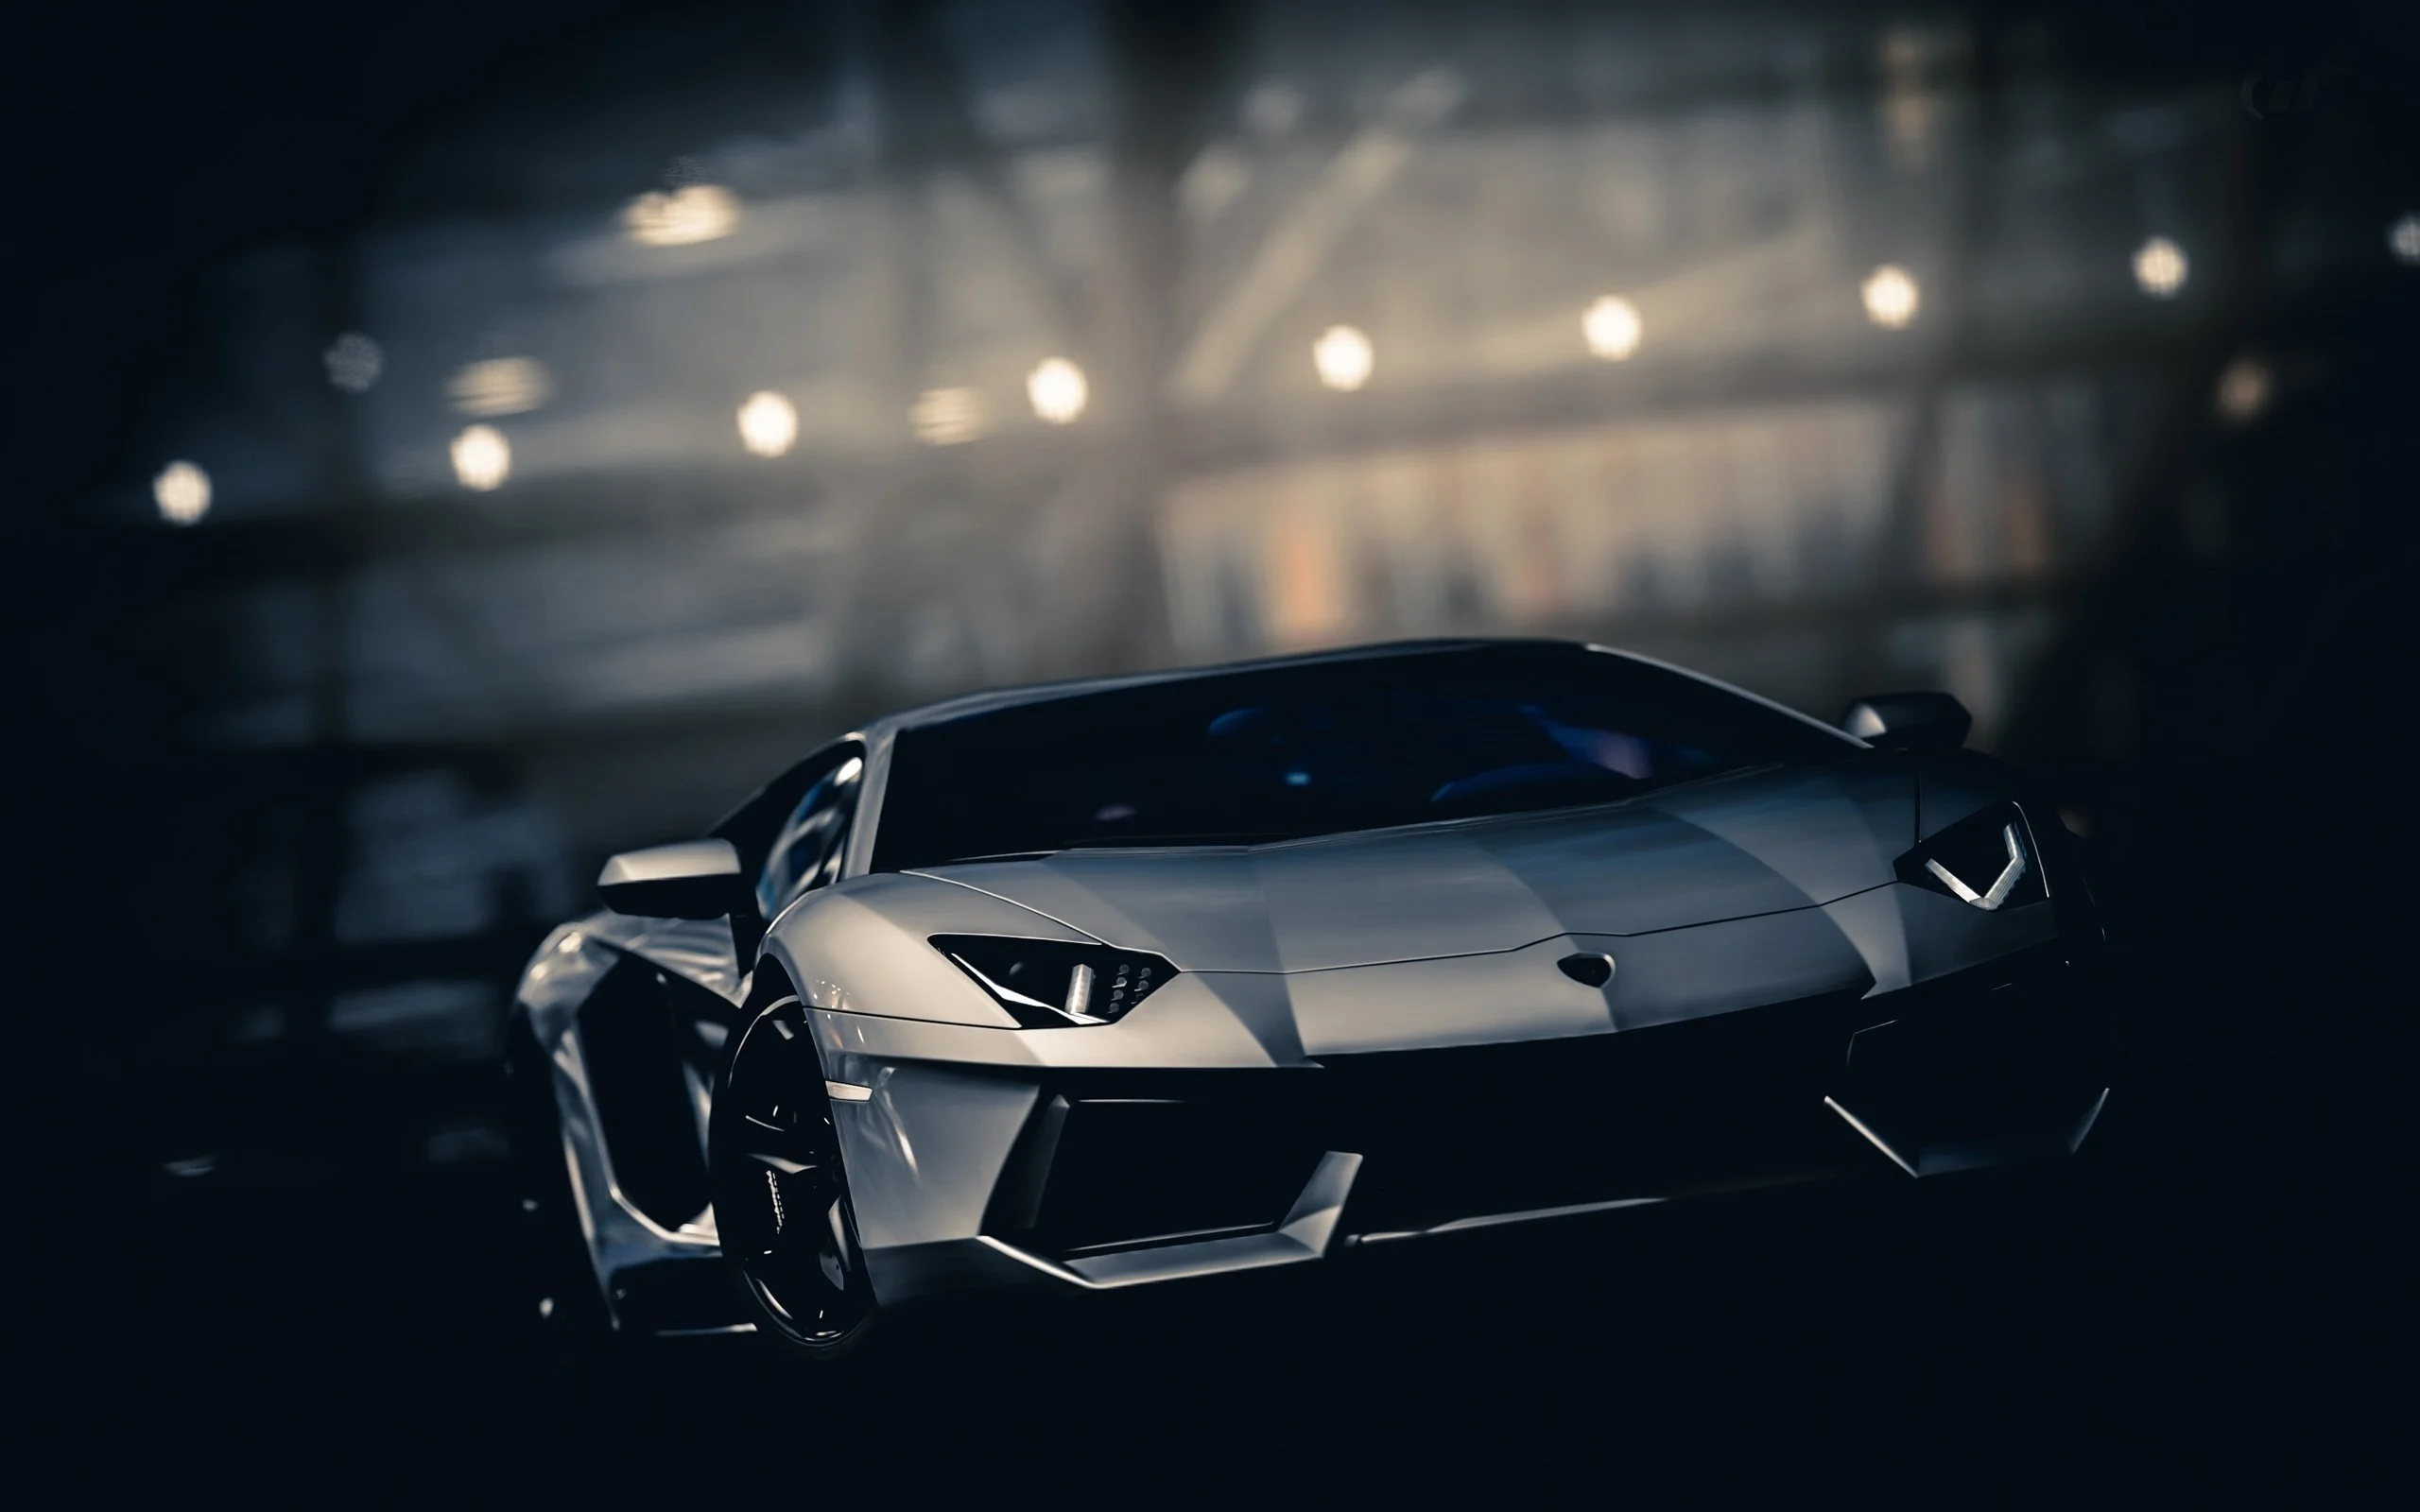 Siêu xe Lamborghini chắc chắn sẽ làm bạn say mê với tốc độ, thiết kế và công nghệ tiên tiến. Bạn sẽ không bao giờ muốn bỏ qua hình ảnh của những chiếc siêu xe này trong bất cứ lần tìm kiếm nào.